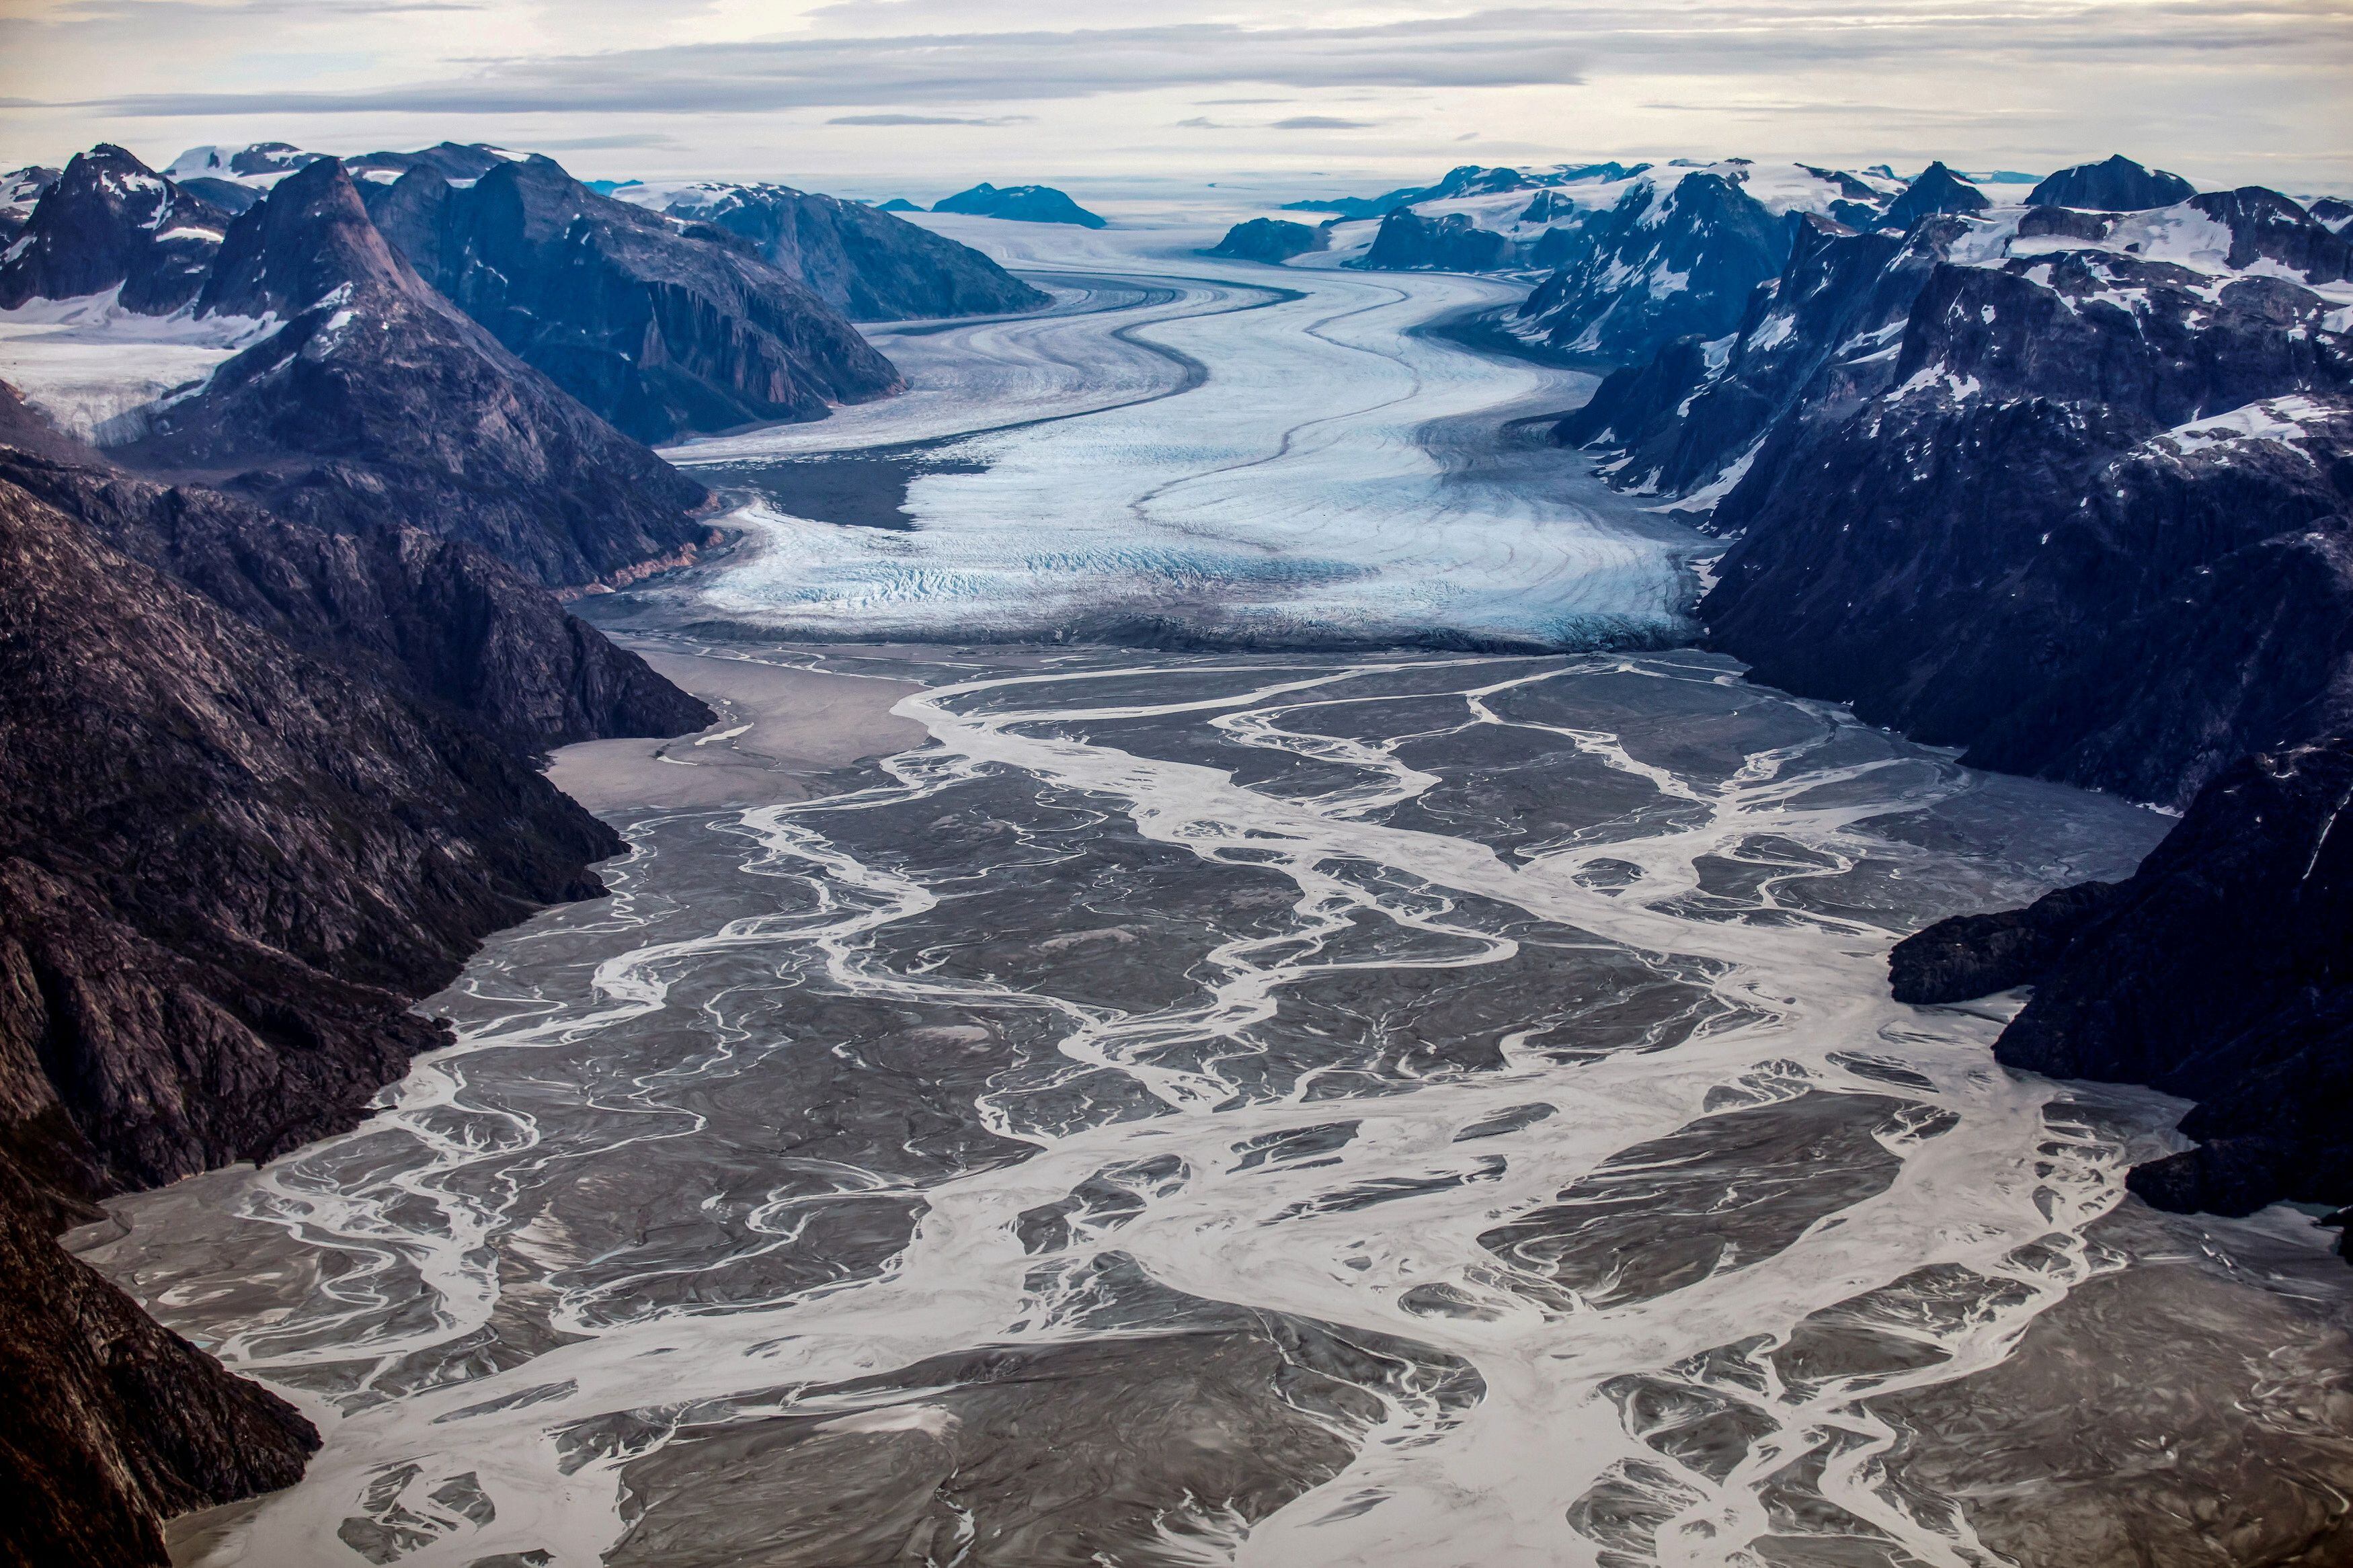 FOTO DE ARCHIVO: El glaciar Sermeq derritiéndose, ubicado a unos 80 km al sur de Nuuk, es fotografiado en esta vista aérea sobre Groenlandia, el 11 de septiembre de 2021. REUTERS/Hannibal Hanschke/File Photo
